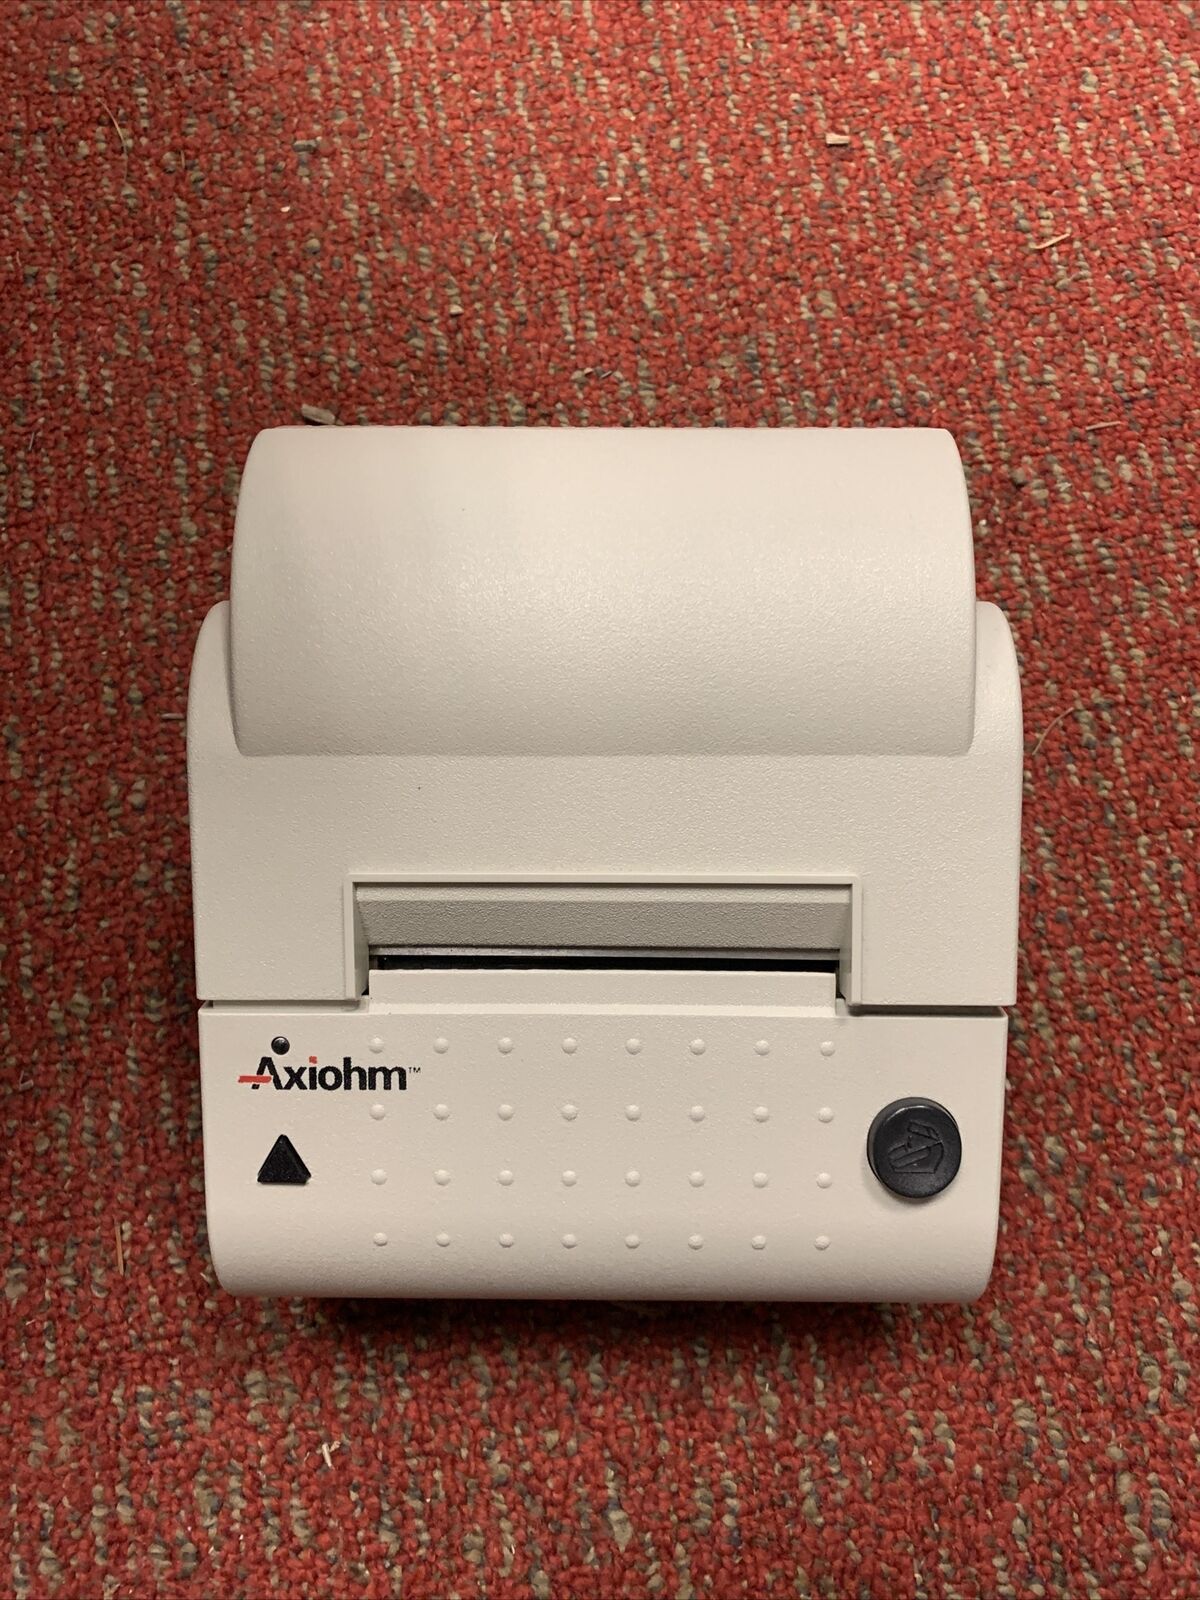 Axiohm A715 parallel reciept printer No Cords Unit Only